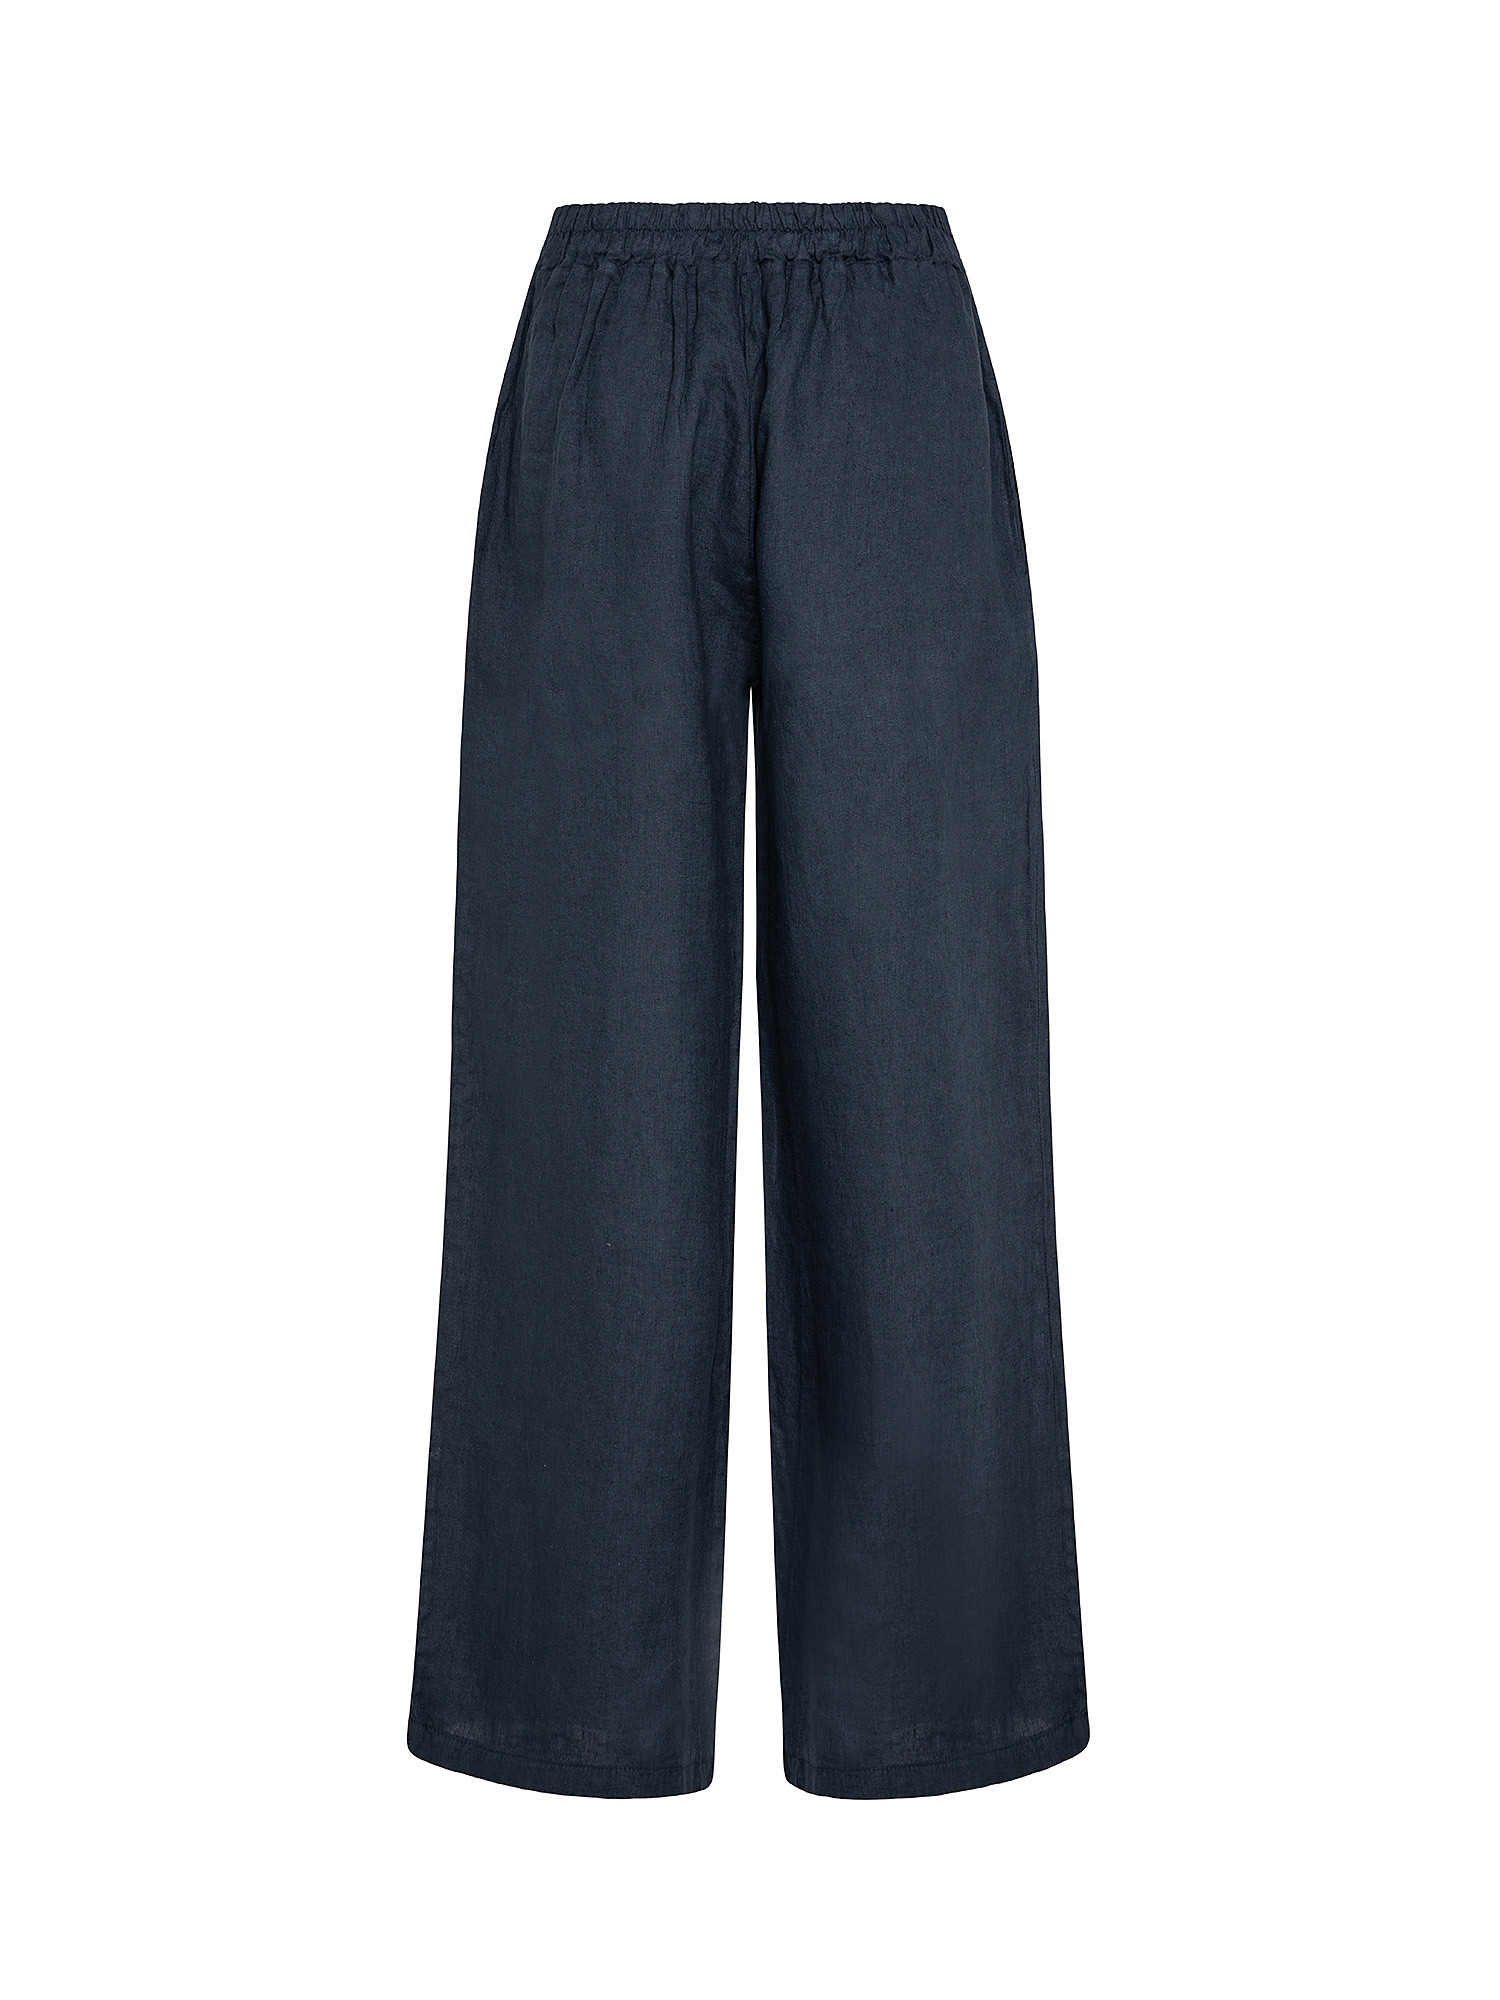 Pantalone ampio puro lino, Blu, large image number 1